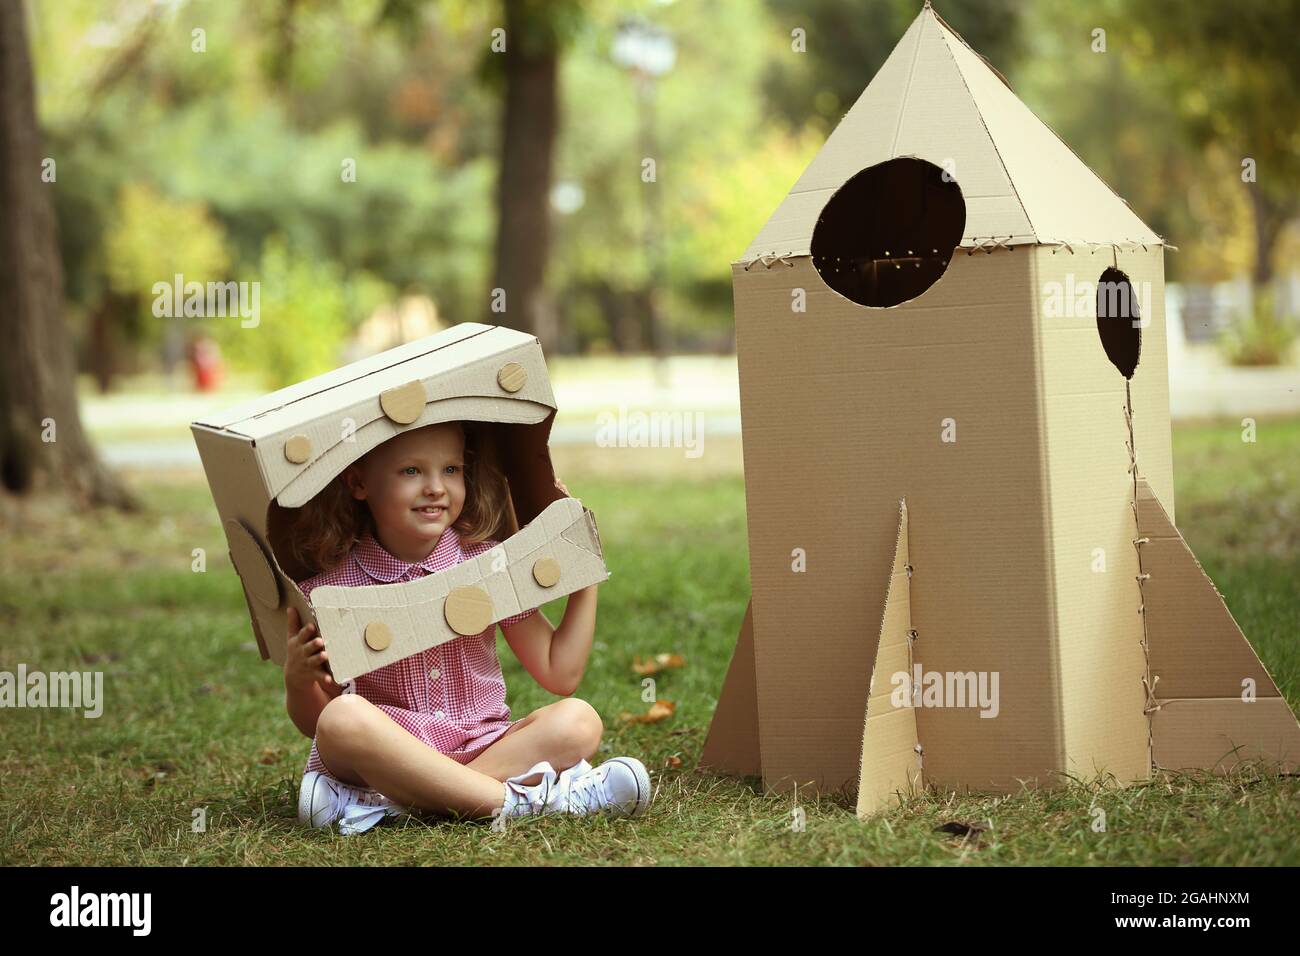 Kleine Mädchen in Karton Karton Helm in der Nähe der Rakete sitzen im Park  Stockfotografie - Alamy